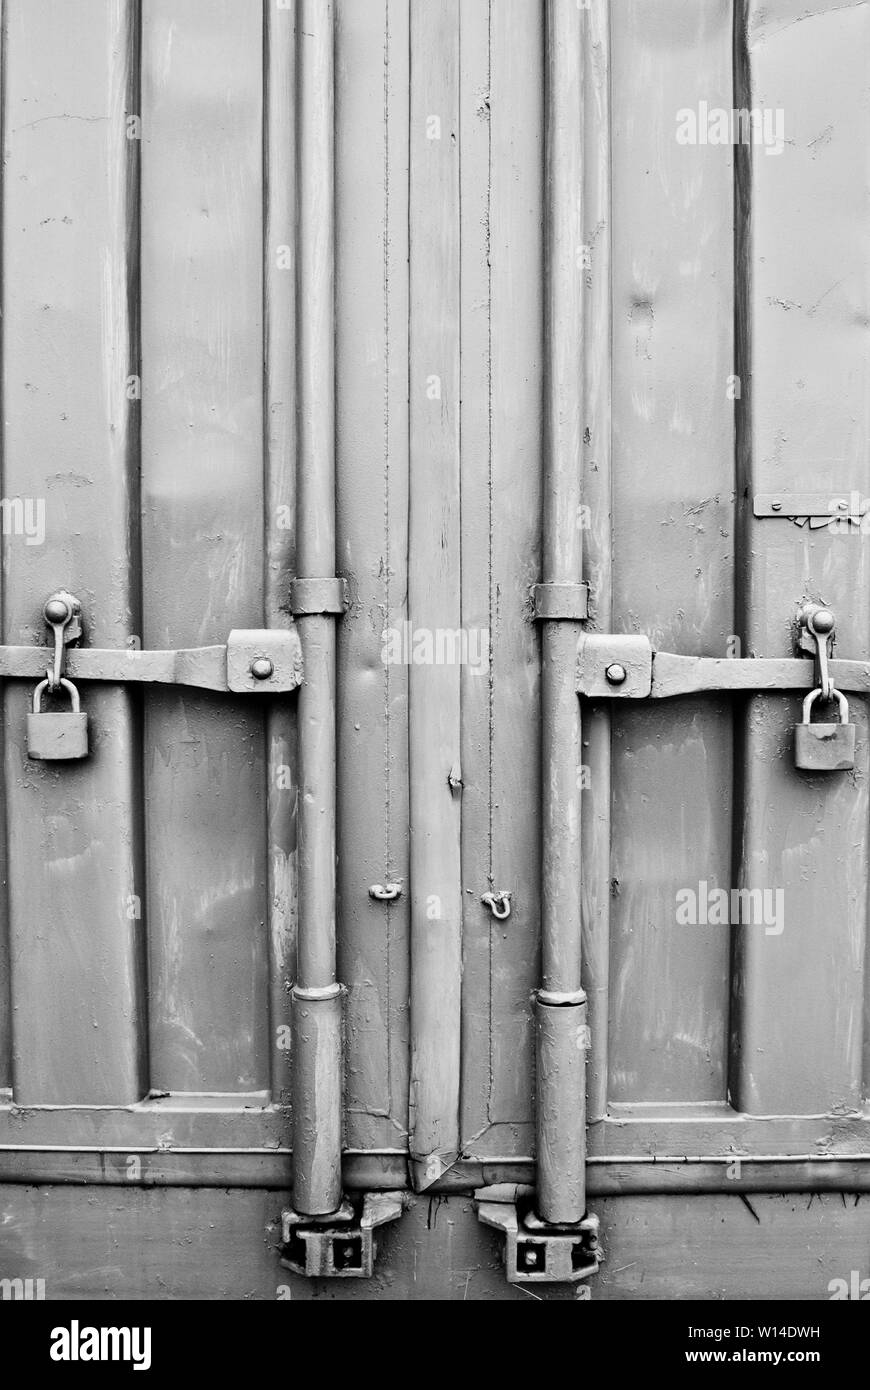 Gris métal avec des serrures des portes conteneurs industriels Banque D'Images